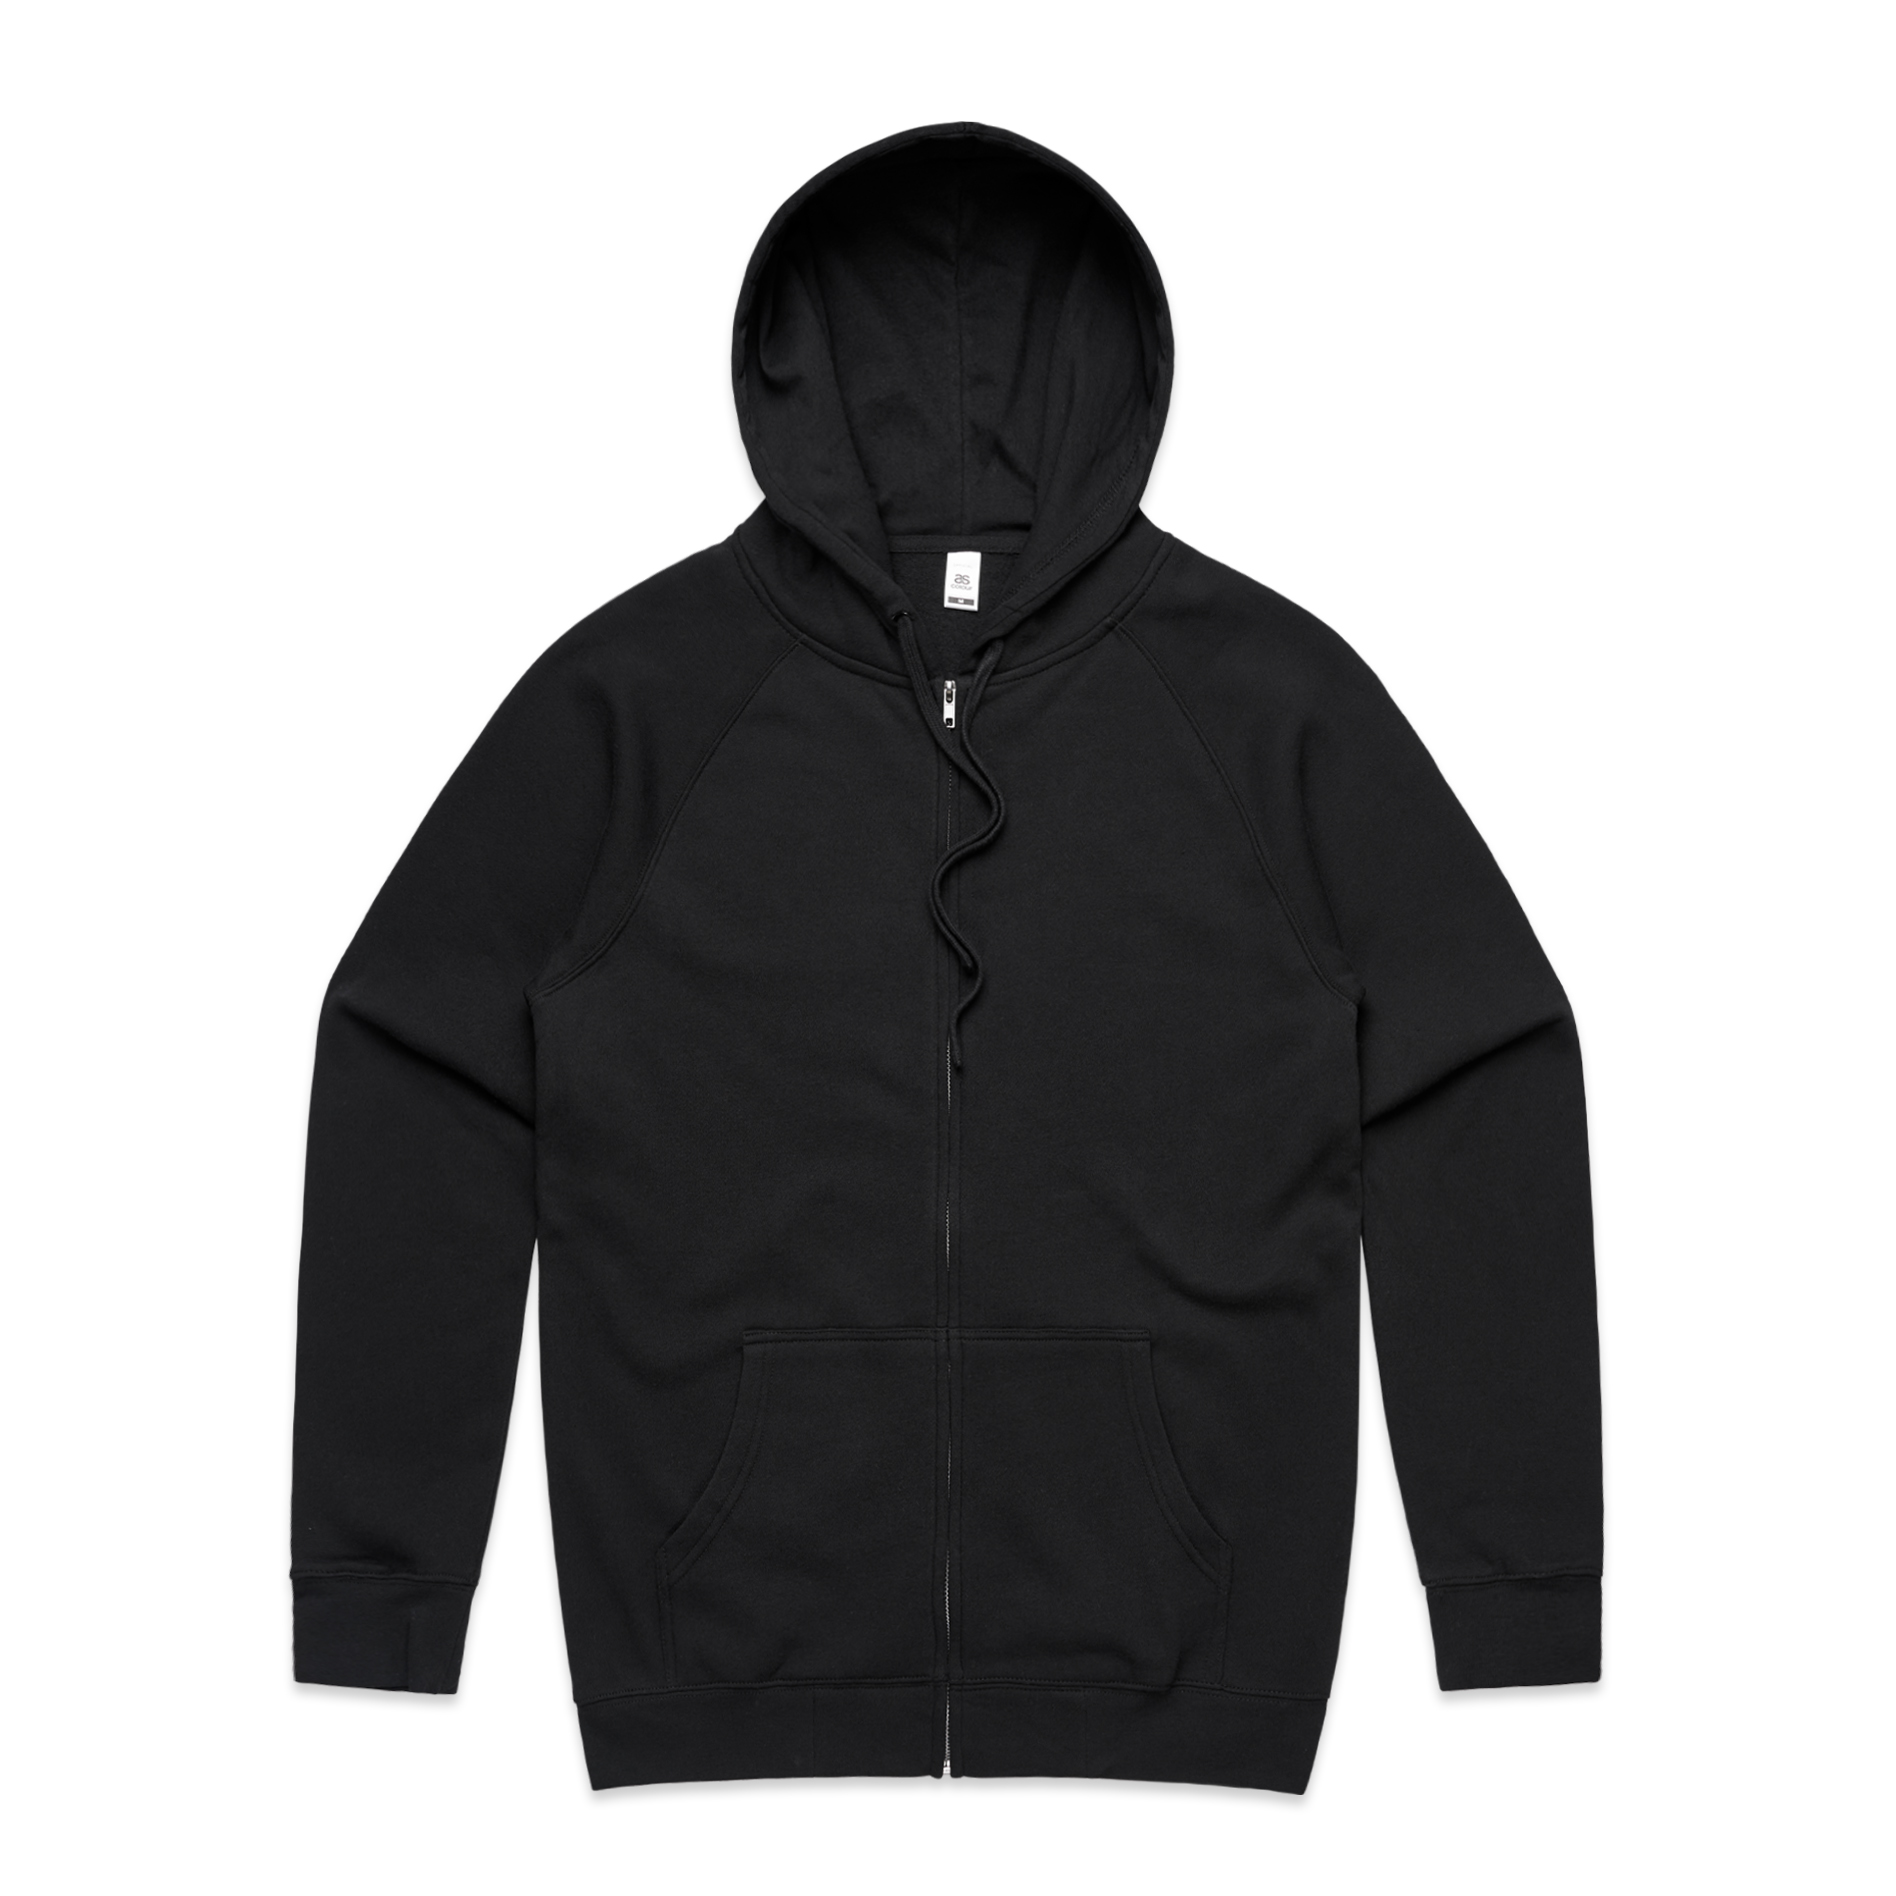 Men's Official Zip Hood - Black 5103 - Uniform Edit